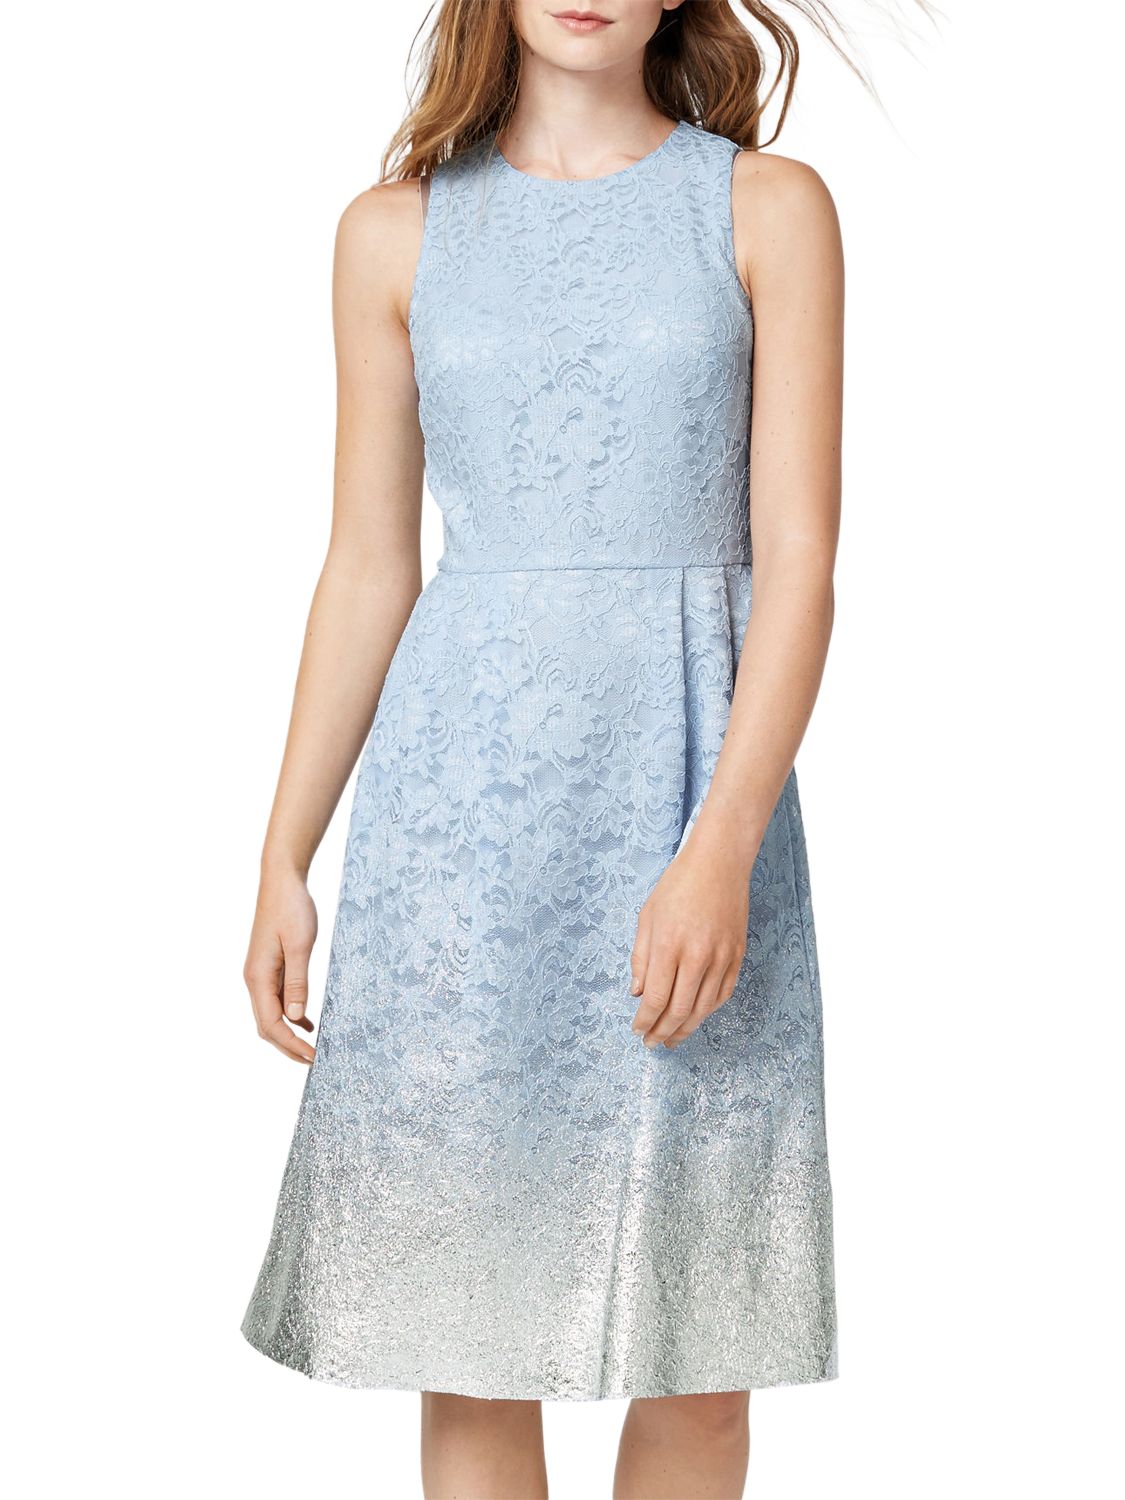 Warehouse Foil Lace Dress, Light Blue, 16